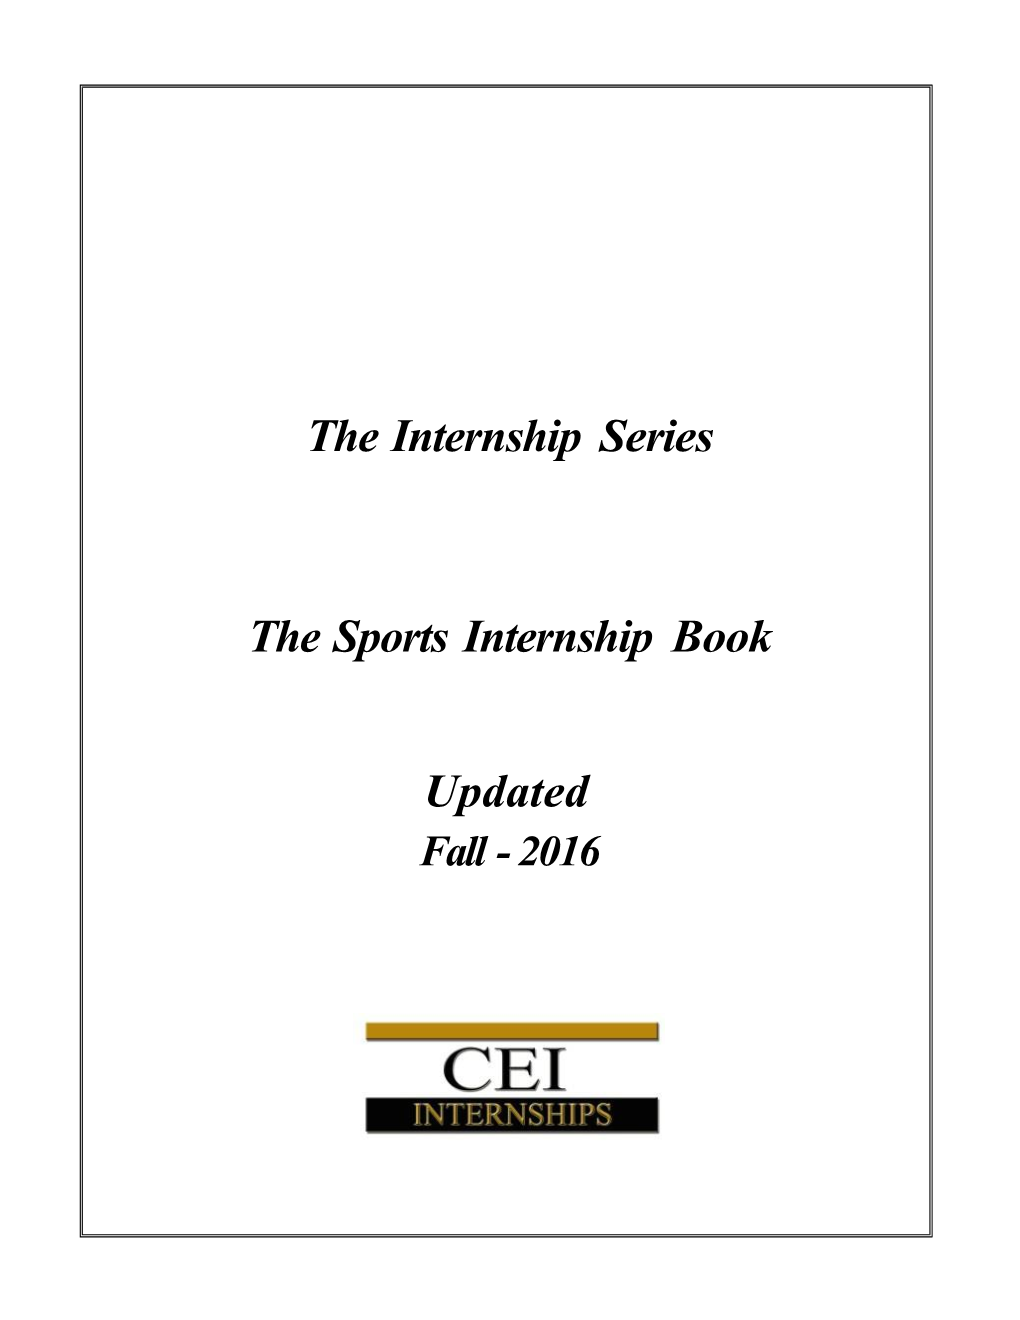 The Internship Series the Sports Internship Book Updated